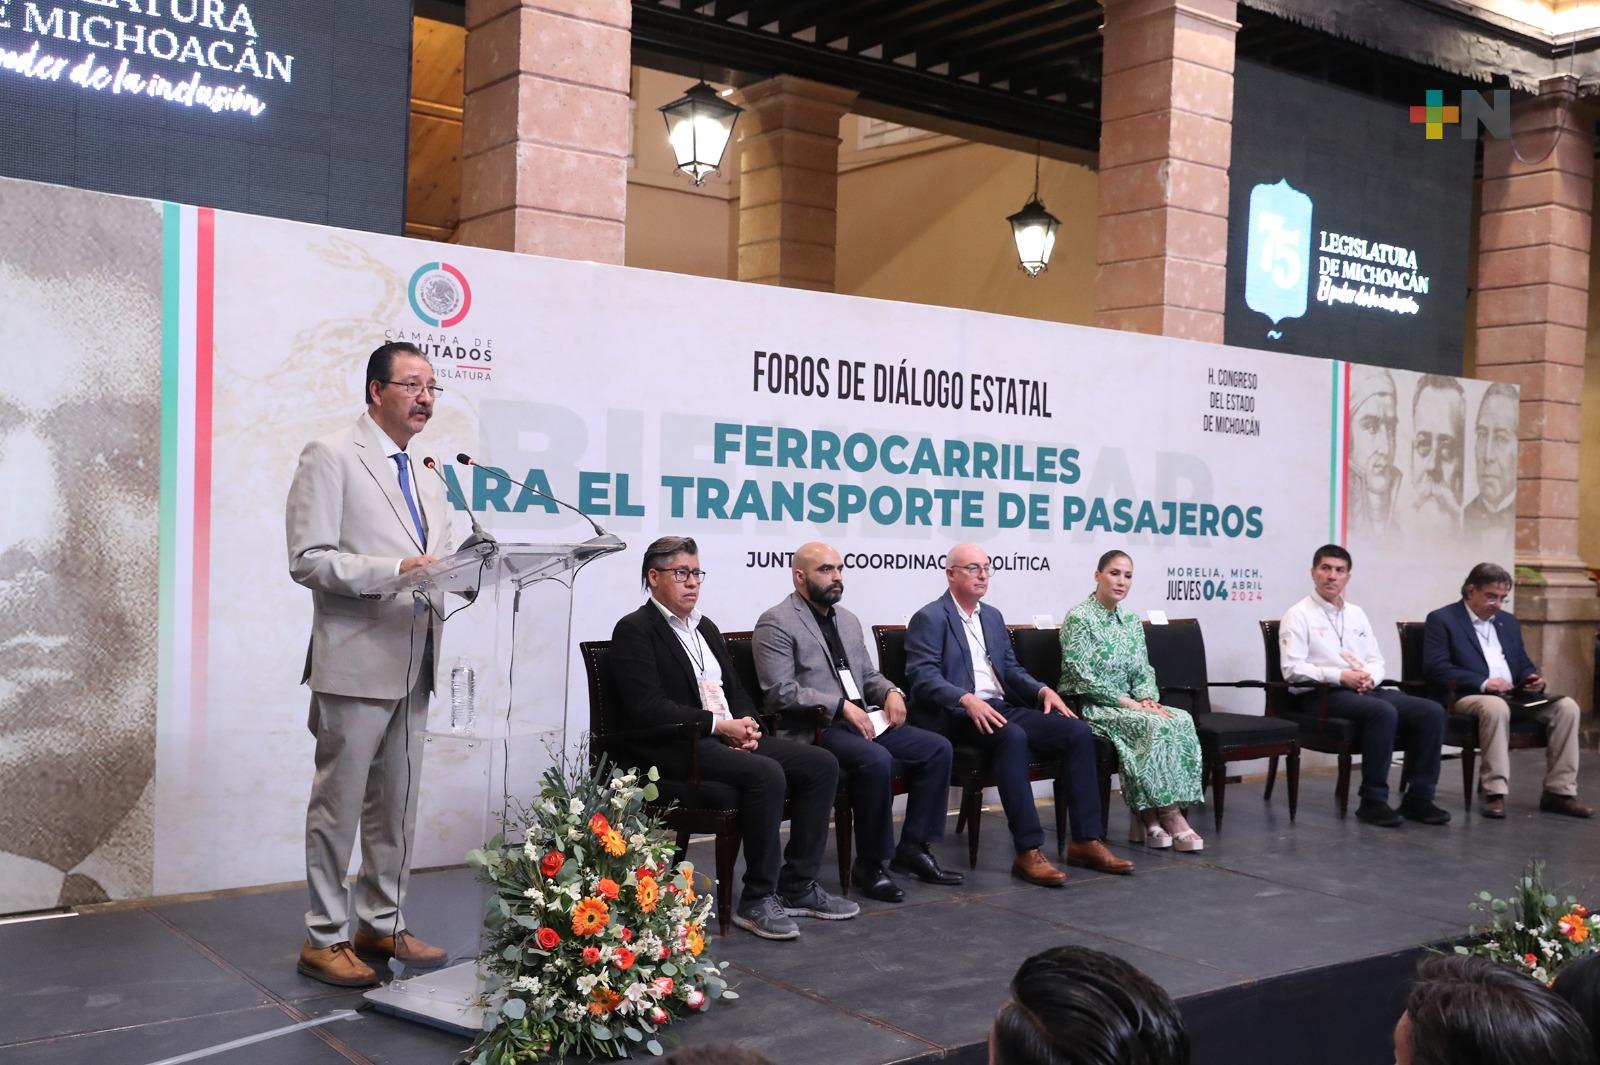 Realizan en Michoacán el Foro de Diálogo Estatal “Ferrocarriles para el transporte de pasajeros”